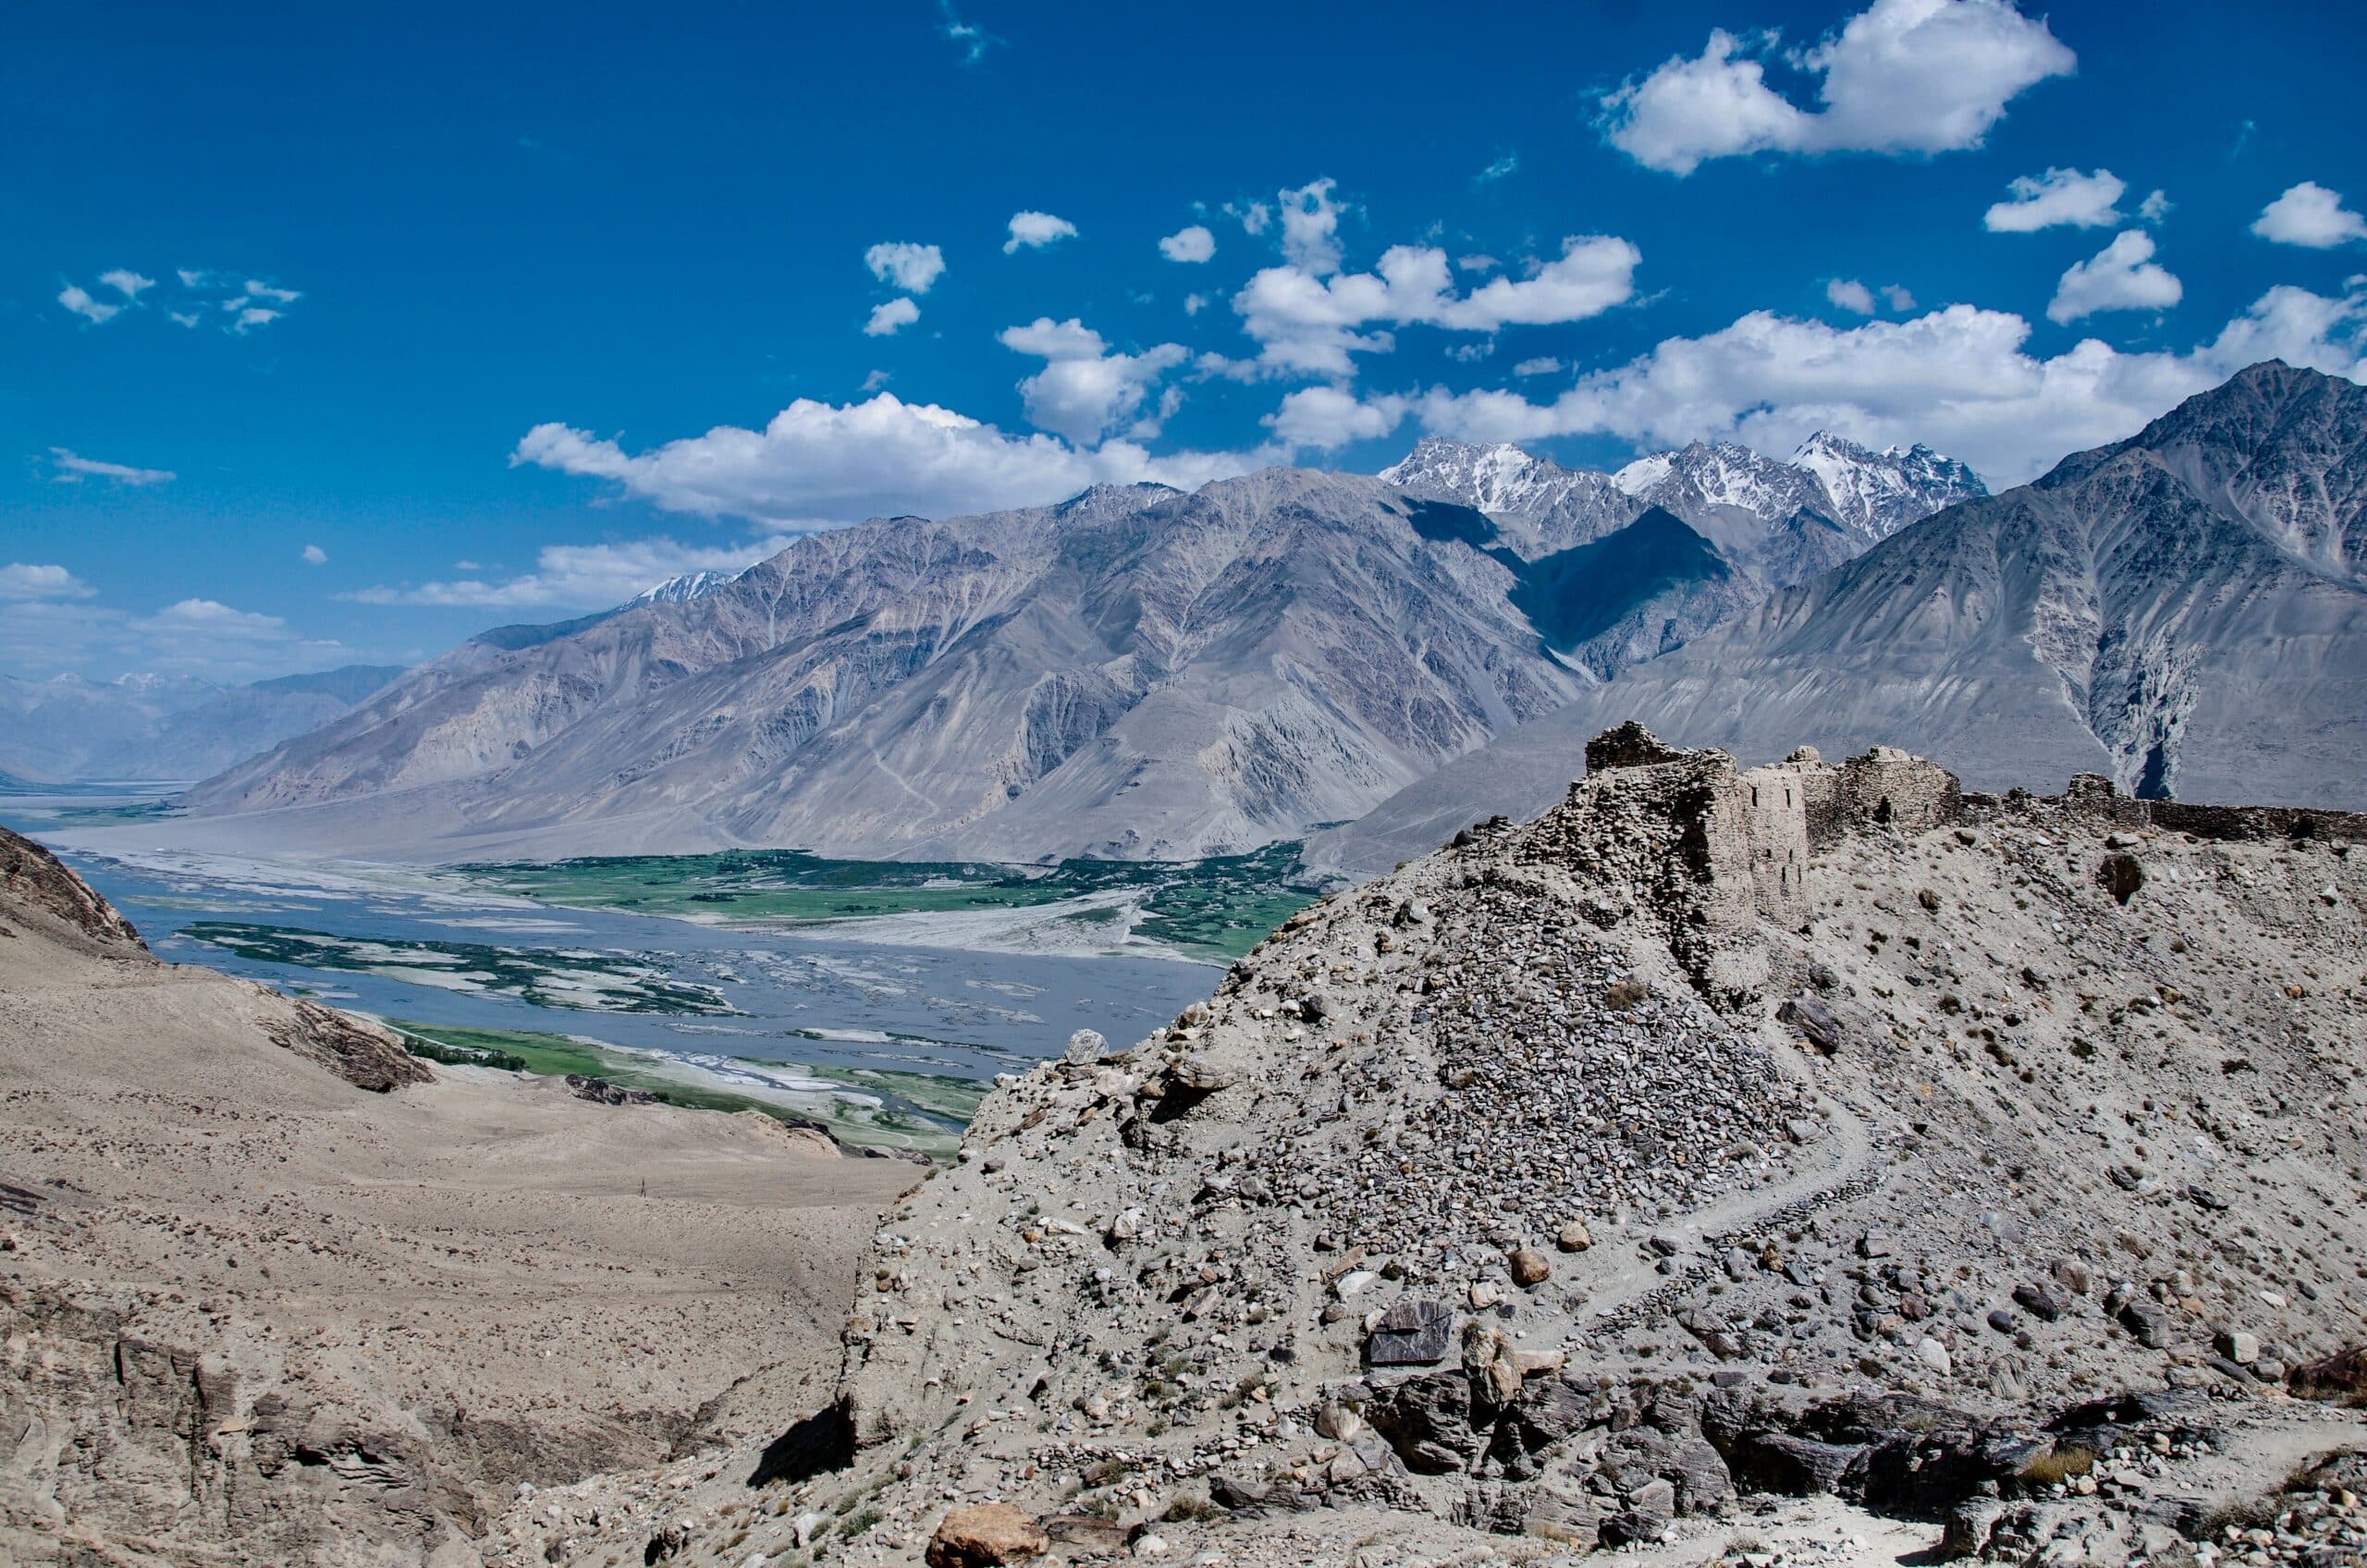 Vista de Yamchun Fort, Tajiquistão, durante o dia, que possui montanhas rochosas e um pequeno lago na área central.